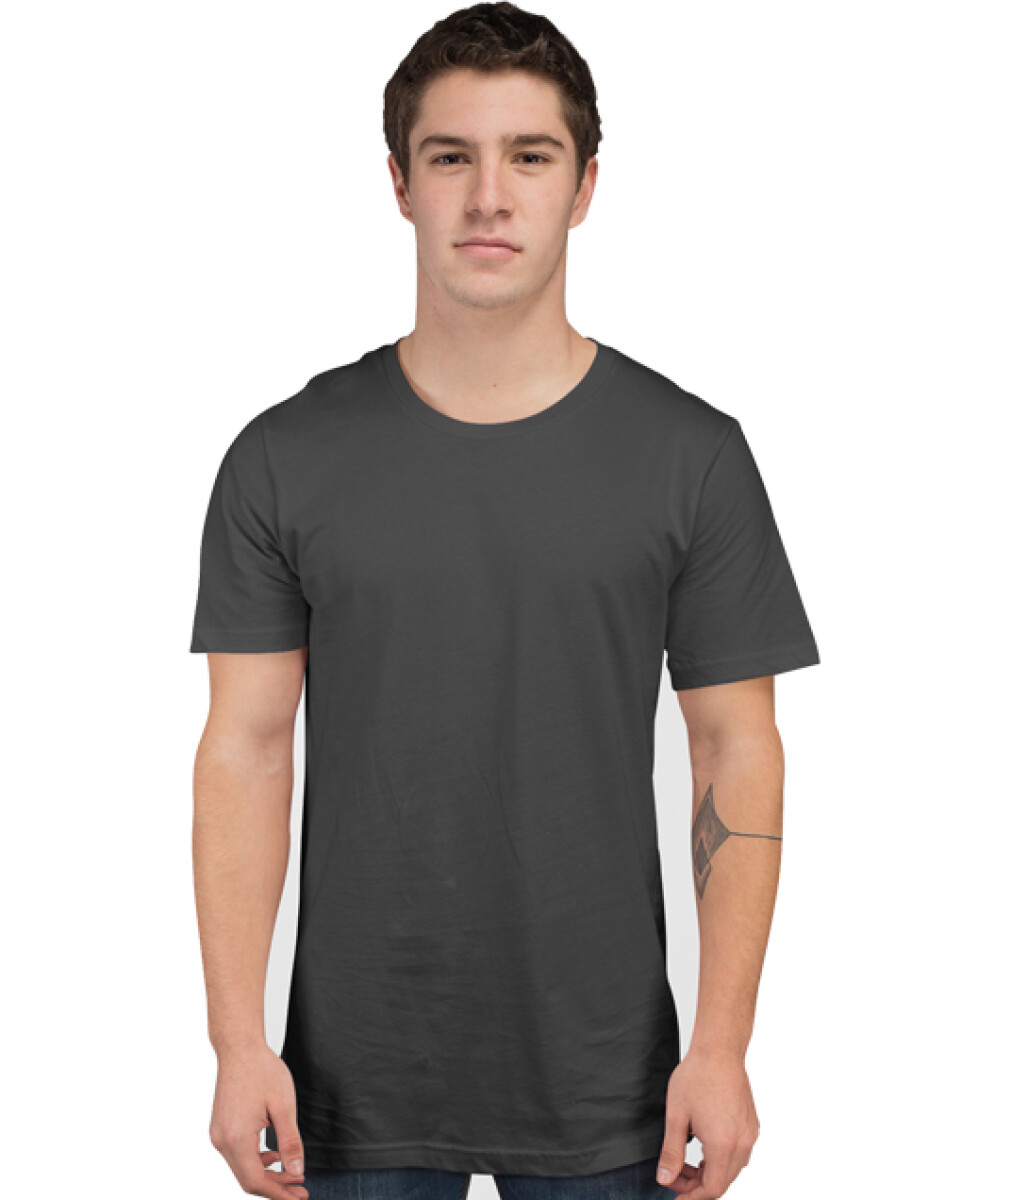 Camiseta a la base peso completo - Gris carbón 